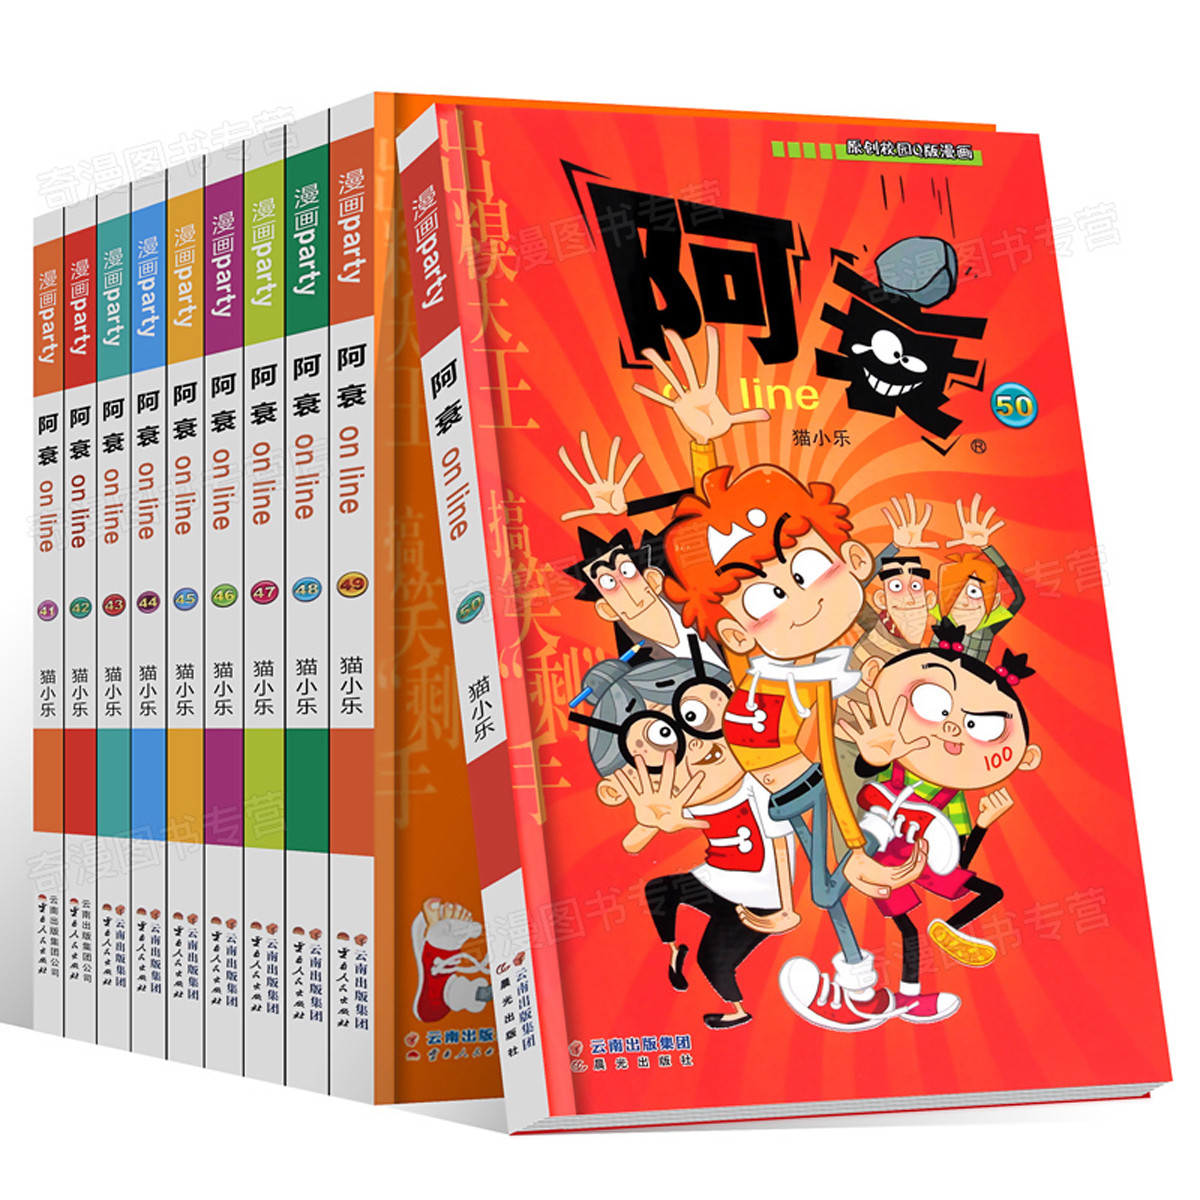 阿衰漫画书大全集1-60册 搞笑儿童书籍 小学生爆笑校园图书